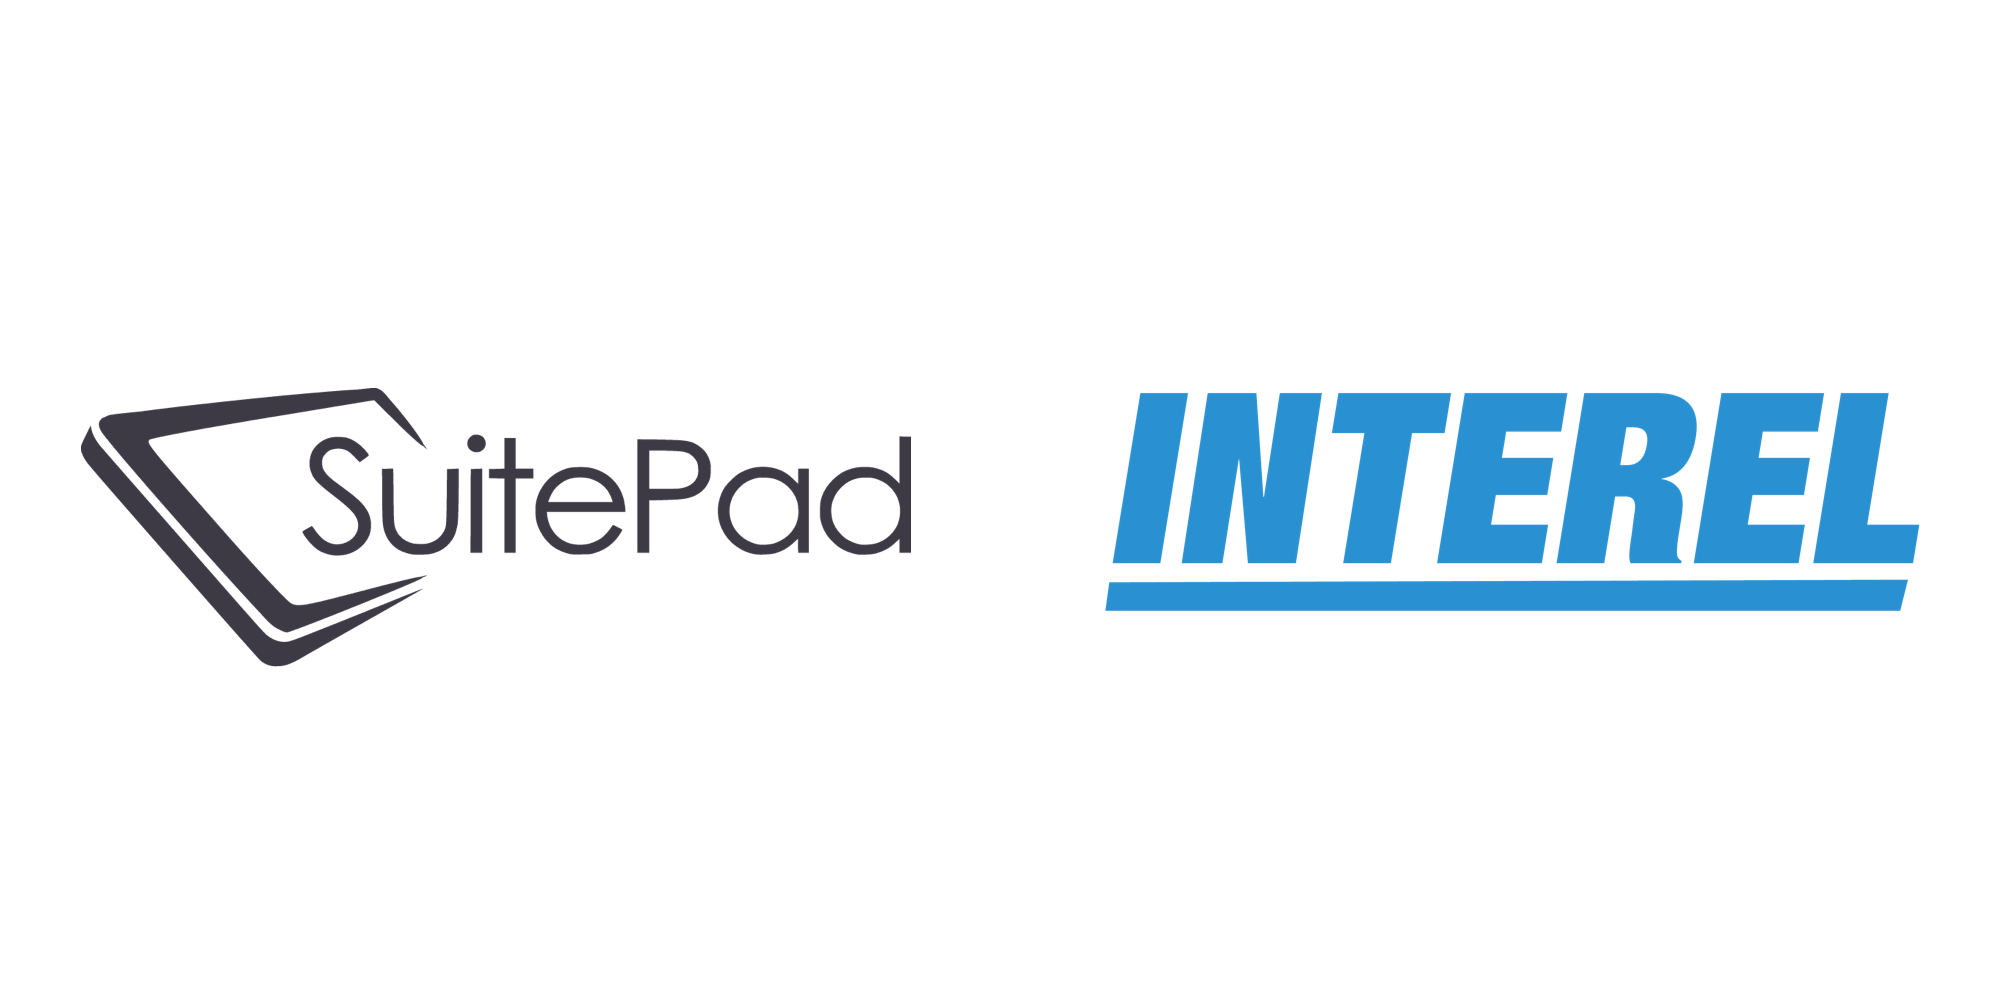 SuitePad & Interel logos